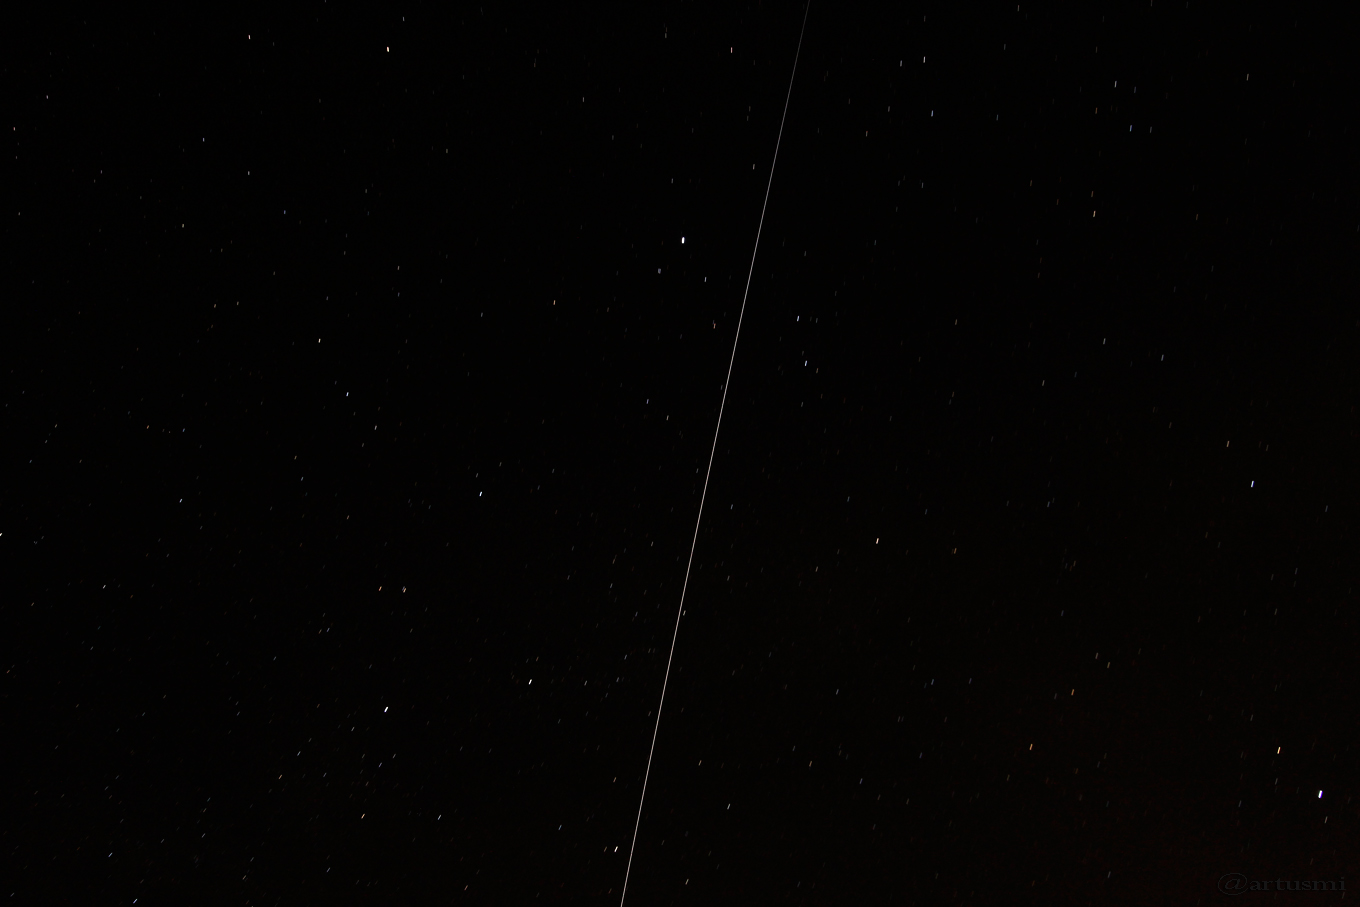 Überflug der ISS am 18. Mai 2017 um 02:24 Uhr